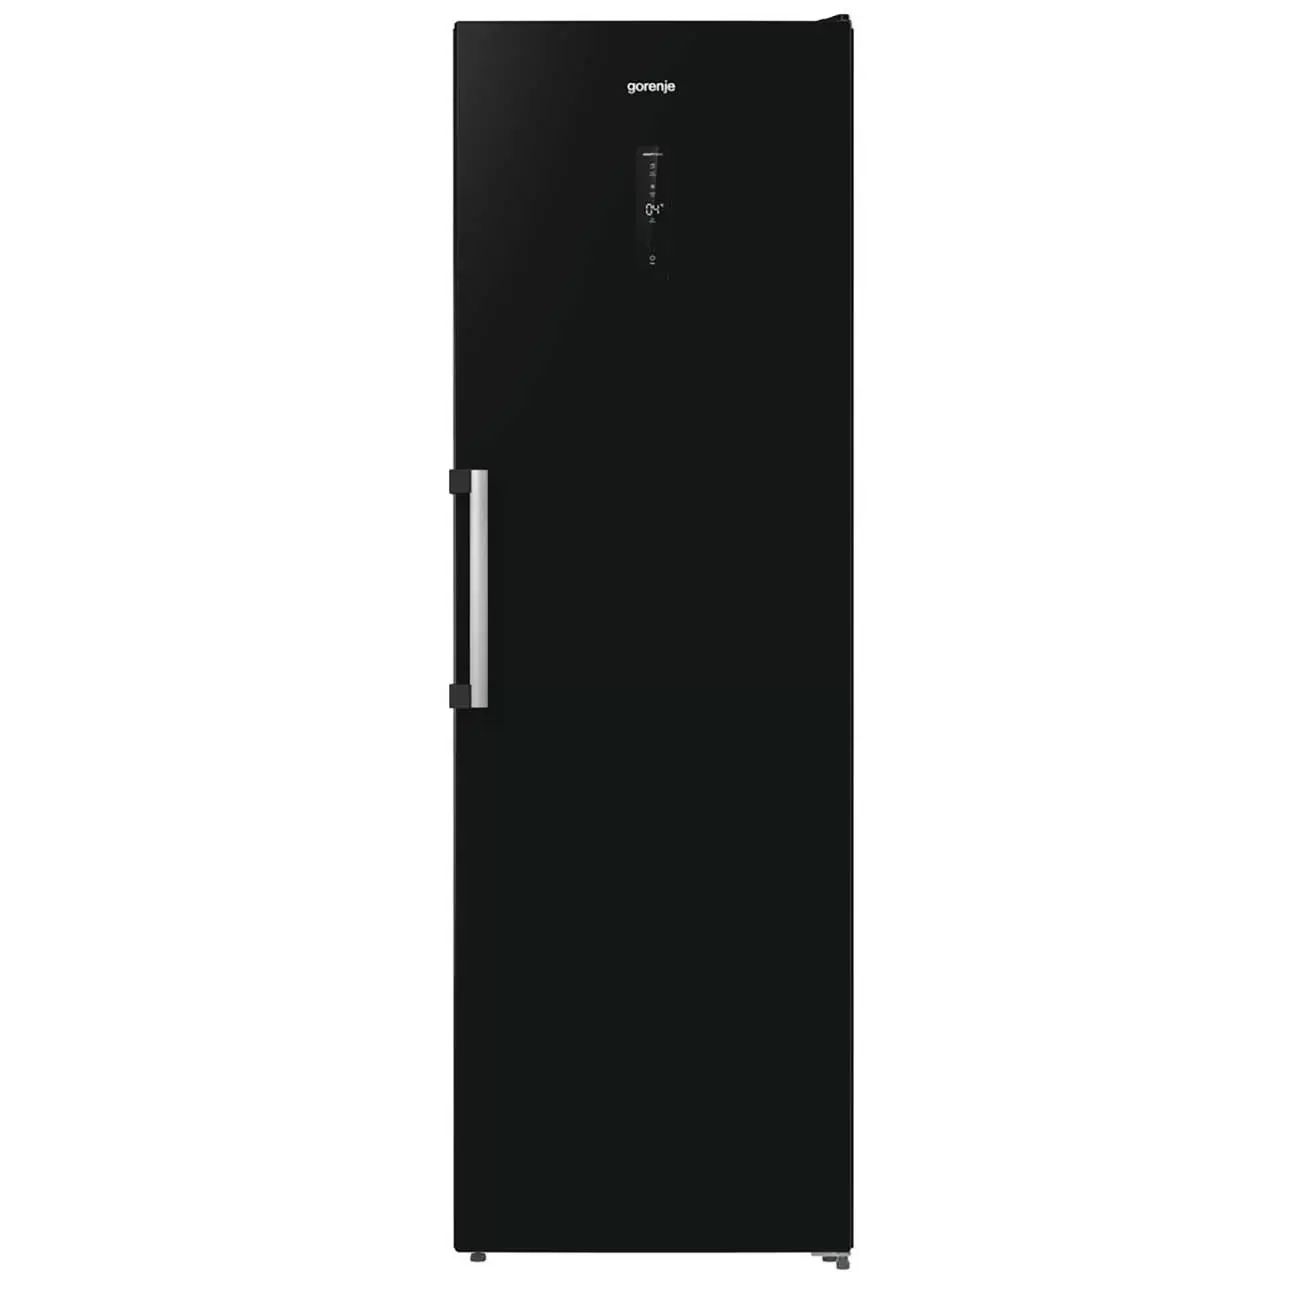 Холодильник Gorenje R619EABK6 черный